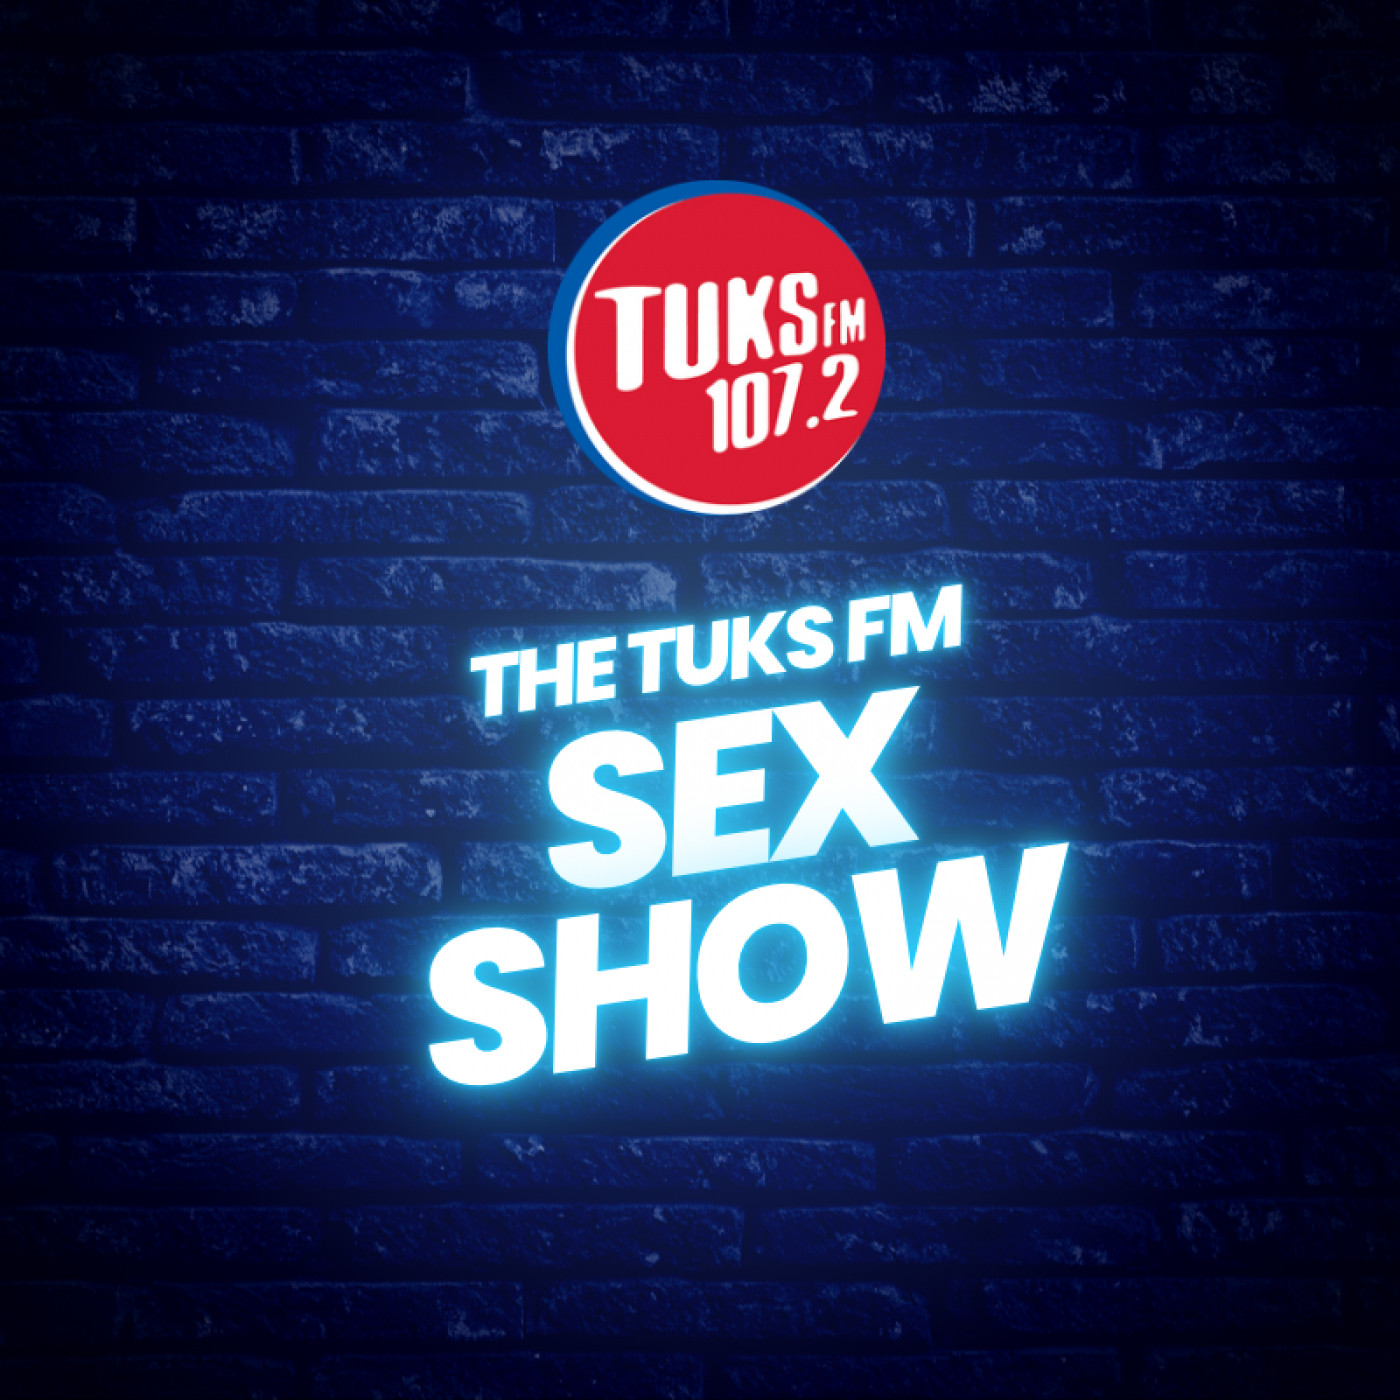 The Tuks FM Sex Show